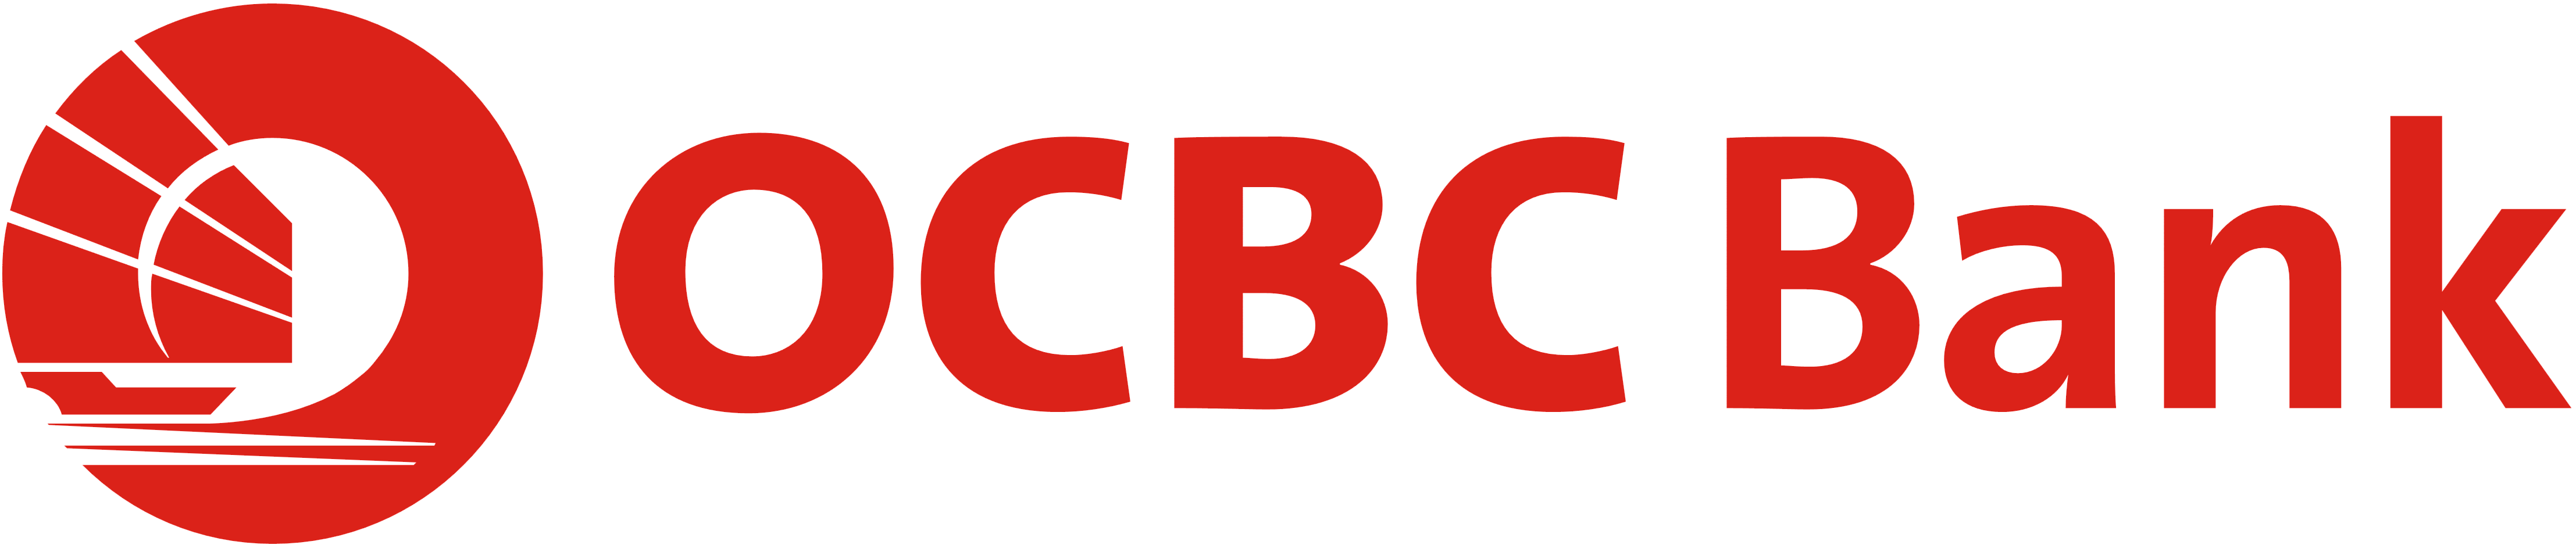 Ocbc Bank Singapore Logos Download